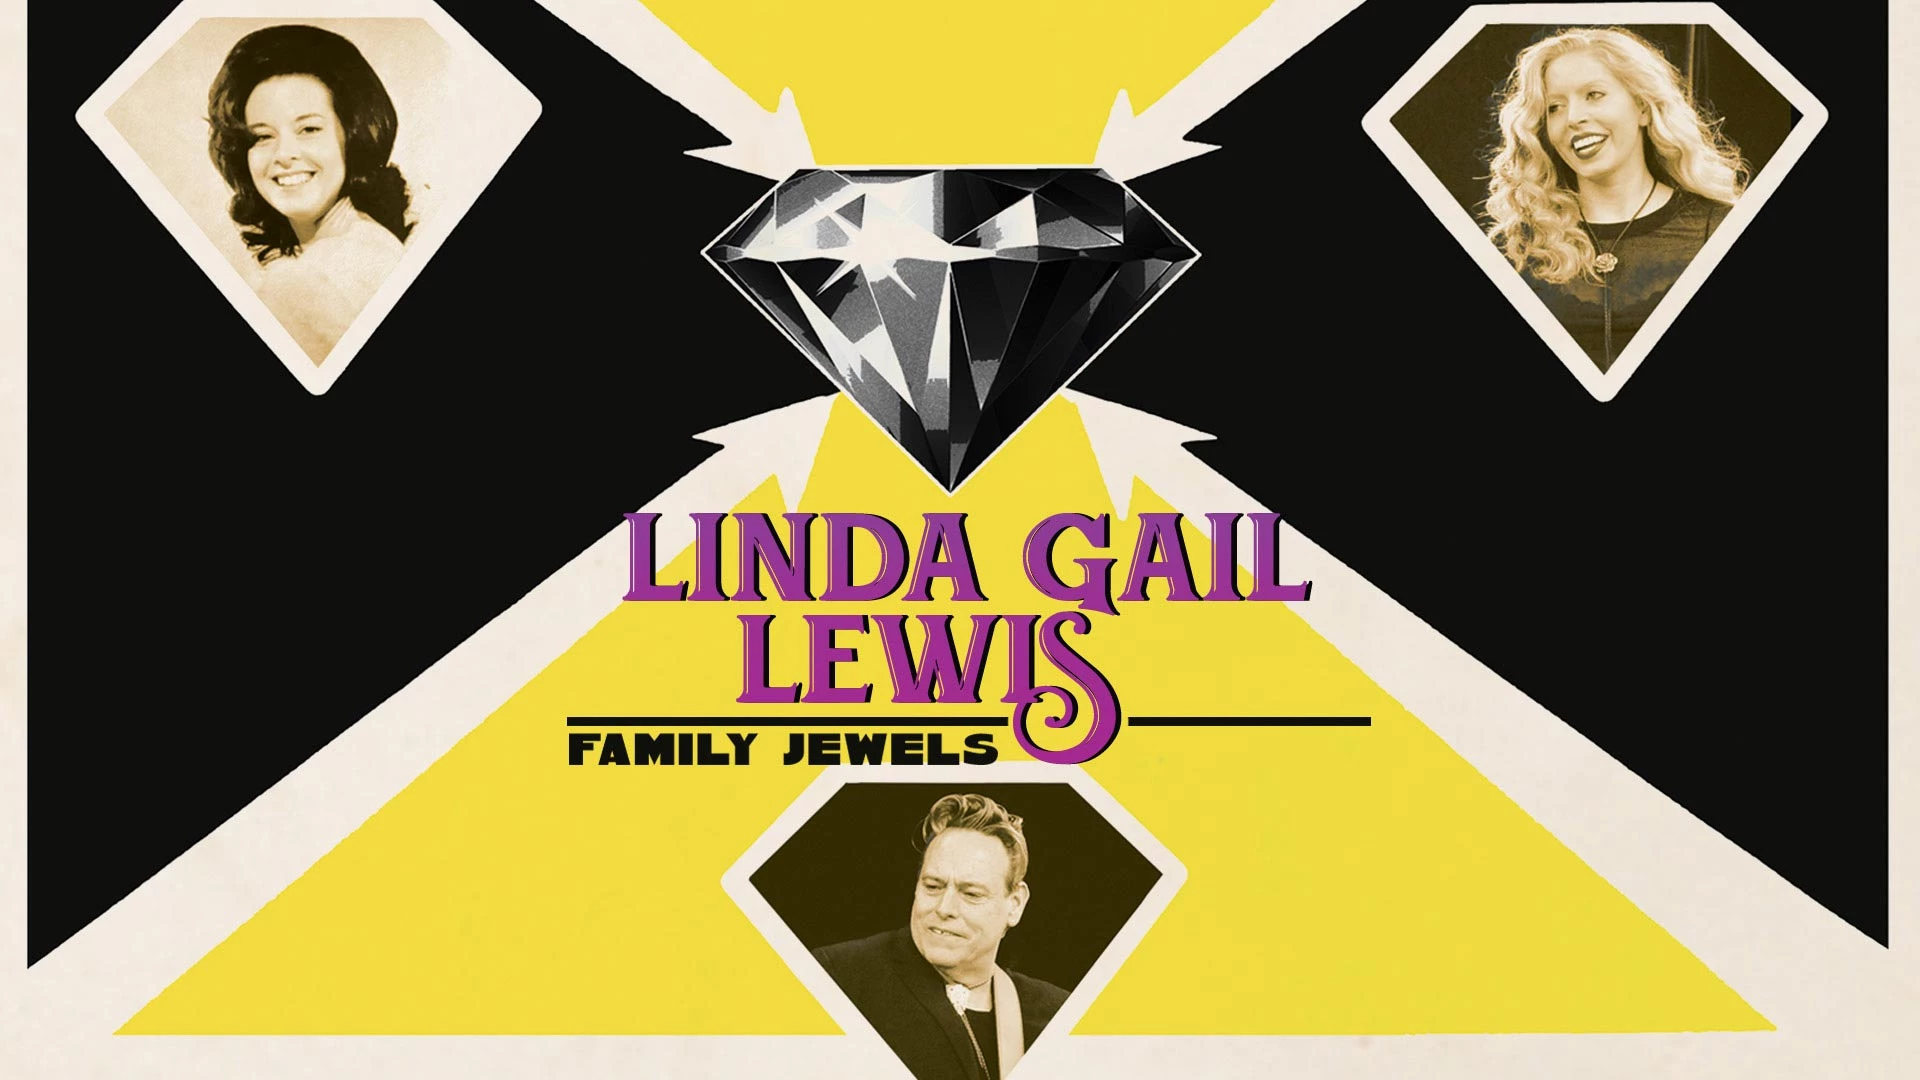 Linda Gail Lewis: Family Jewels